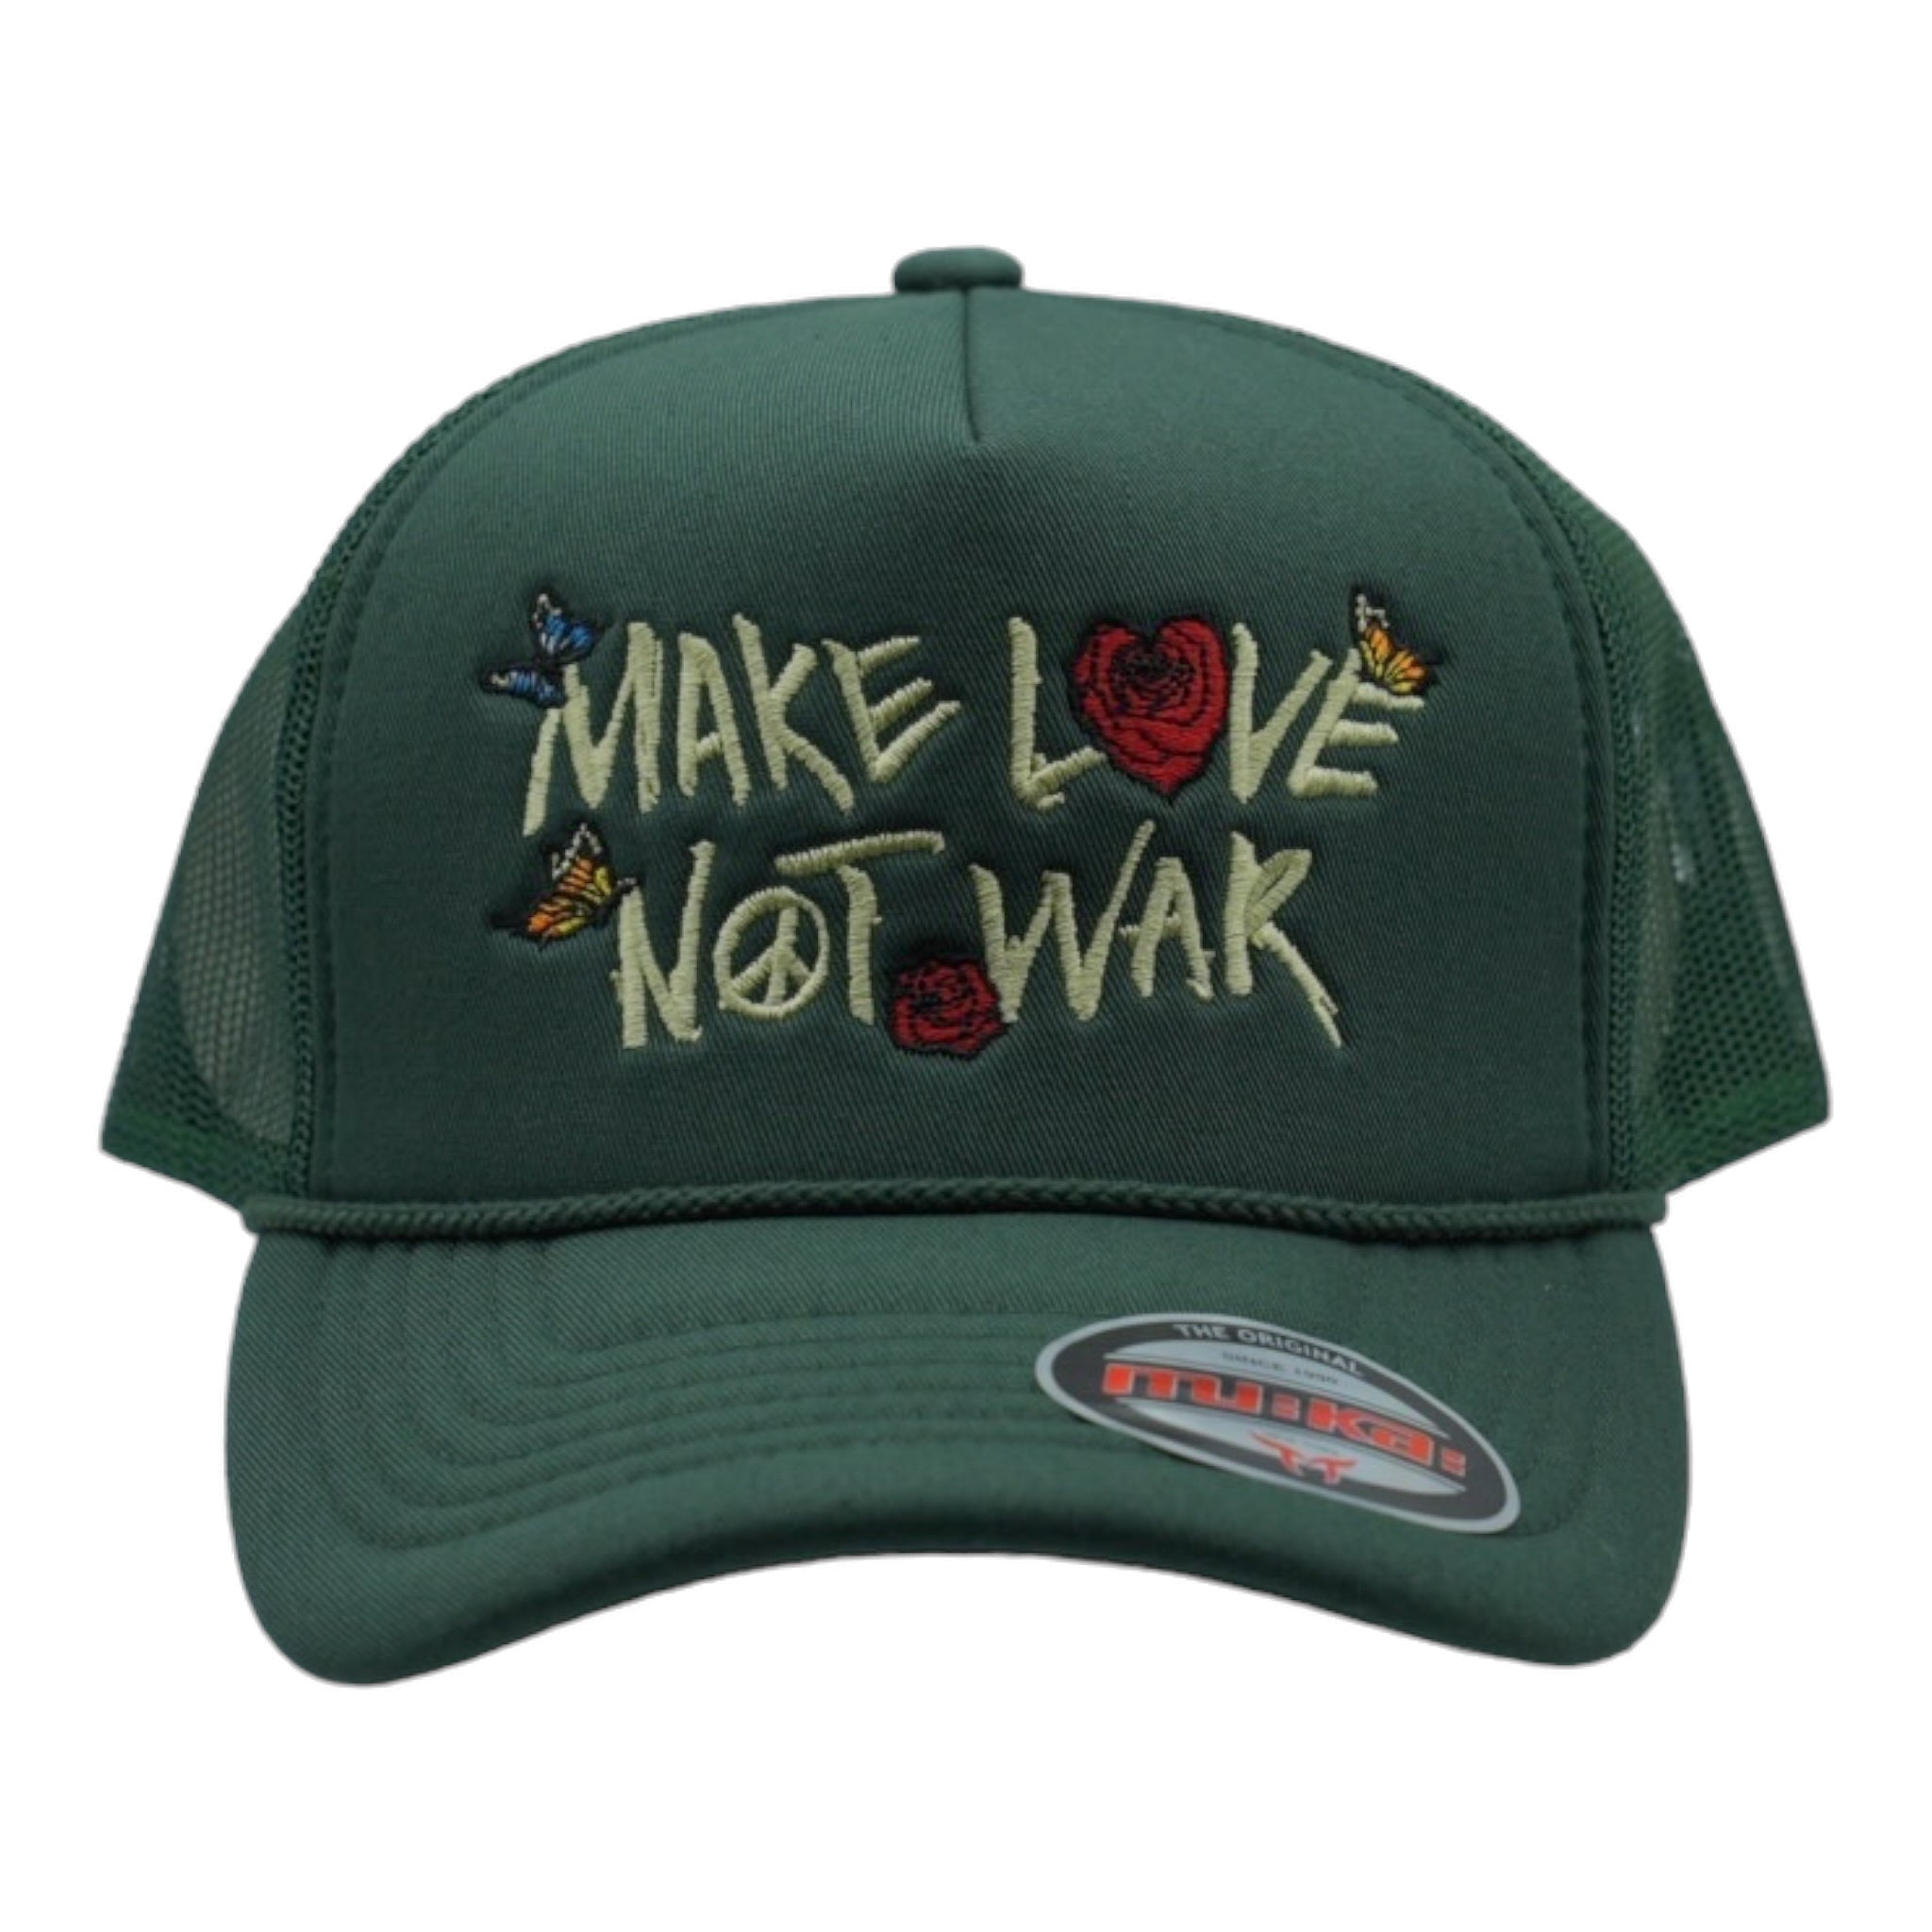 MUKA - MAKE LOVE NOT WAR TRUCKER HAT